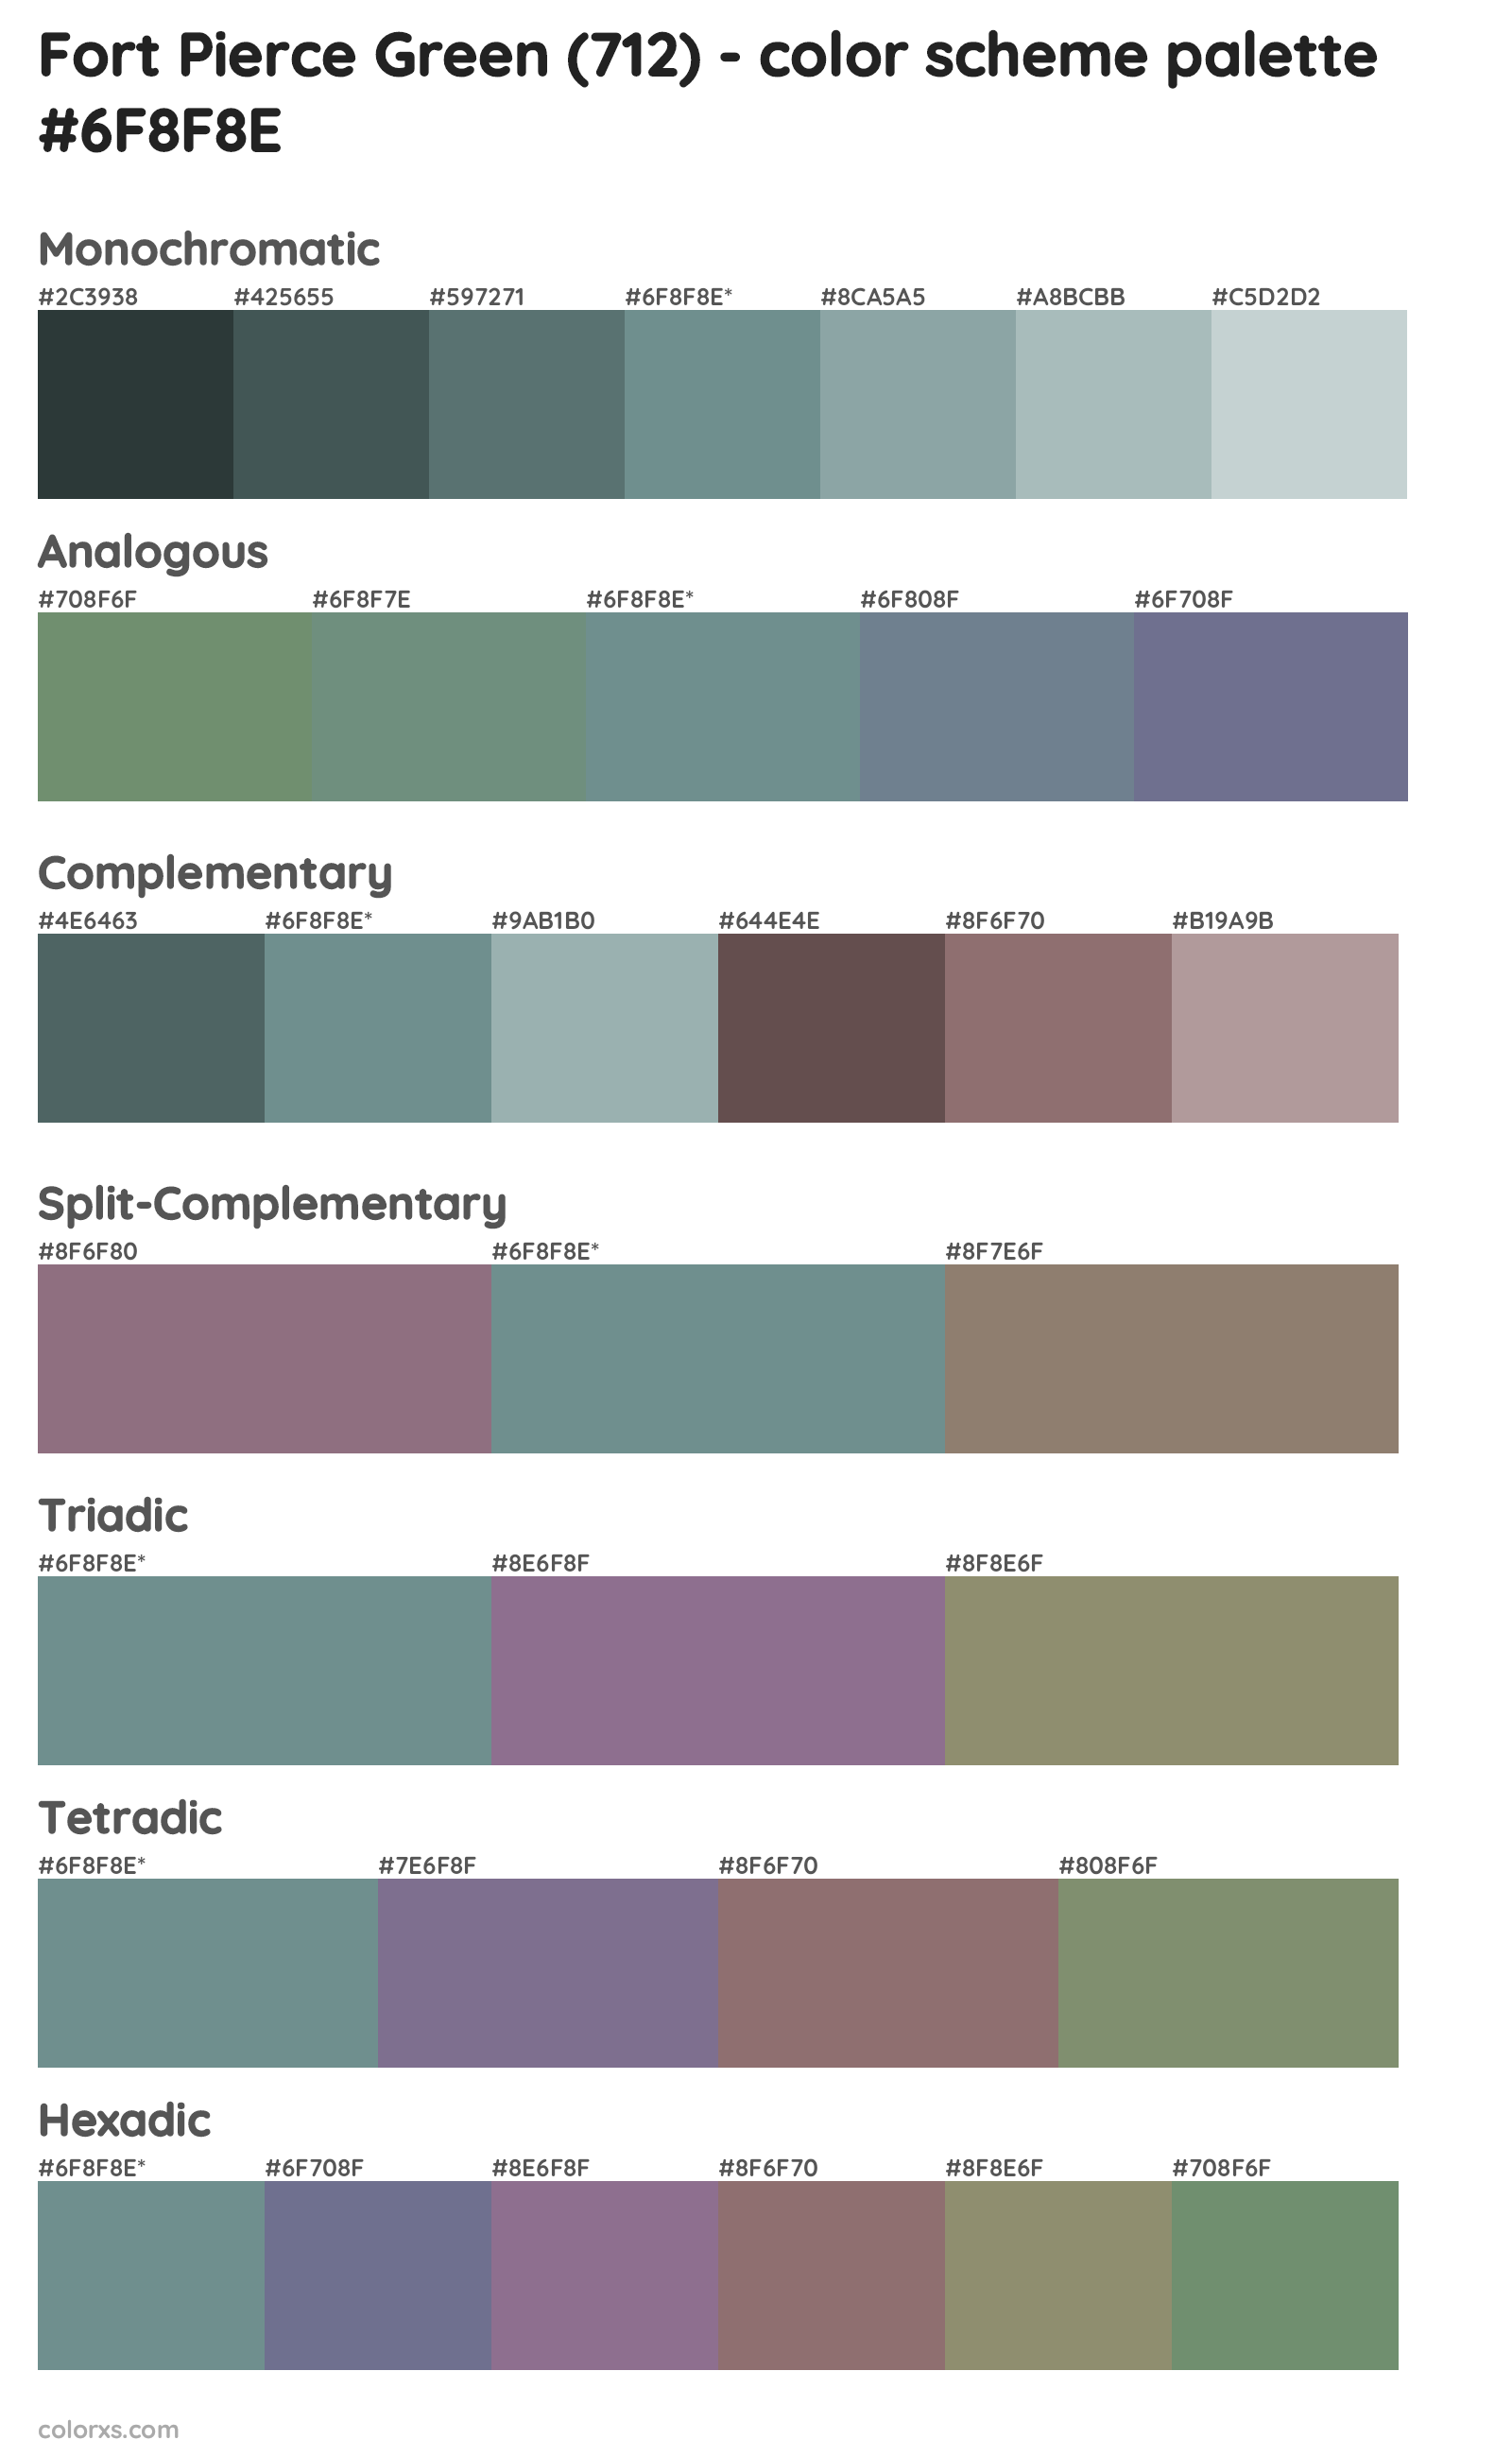 Fort Pierce Green (712) Color Scheme Palettes